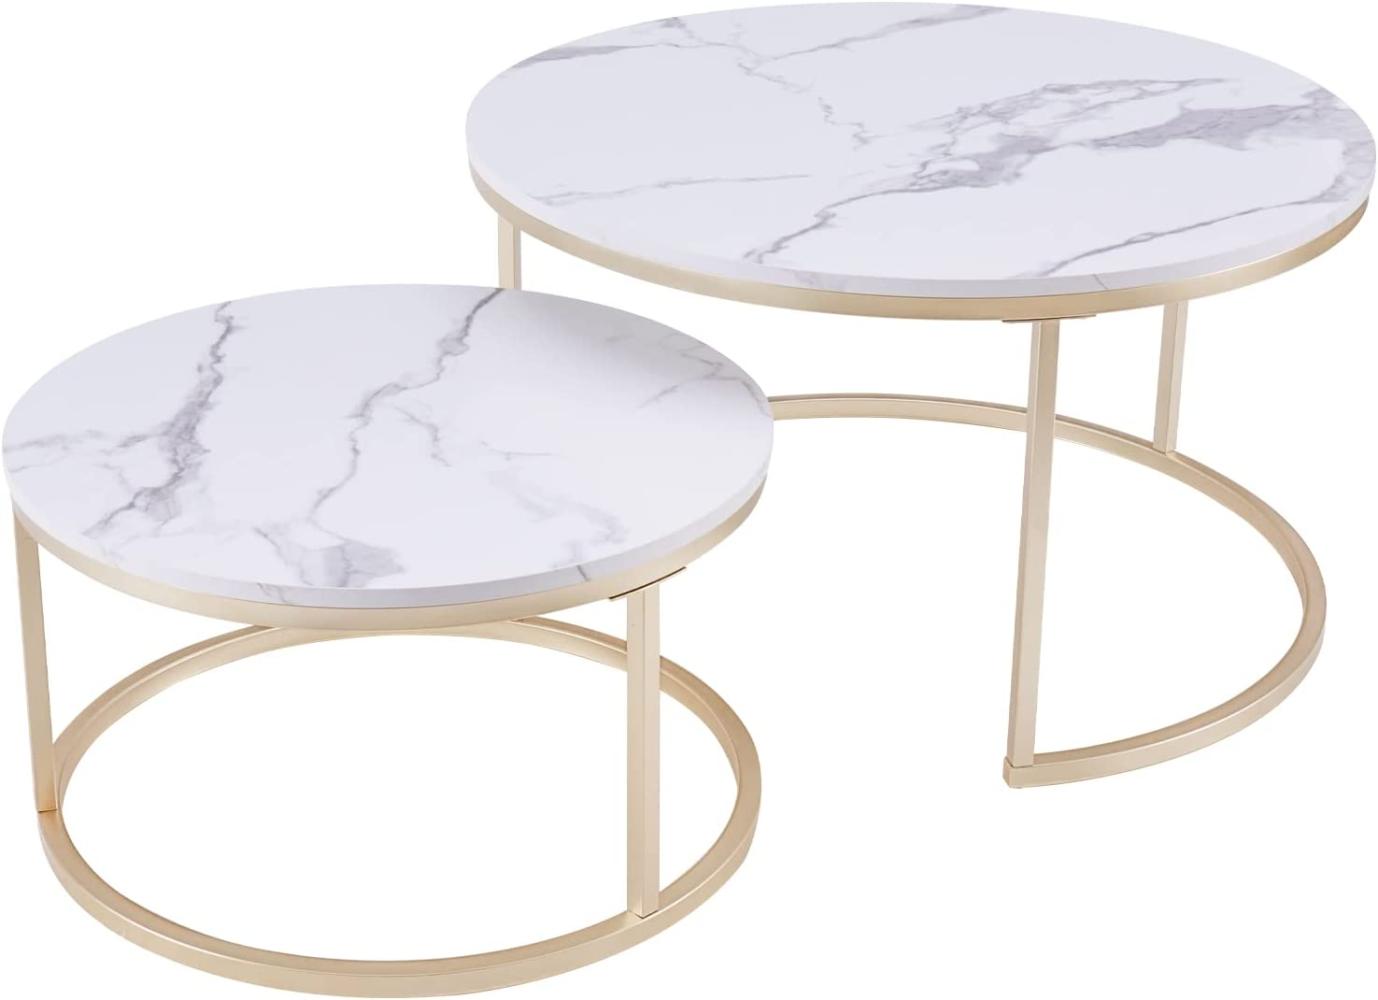 Huuryoudo Couch Tisch, Couchtisch 2er Set Rund Tisch Wohnzimmer Rund mit Metallgestell Beistelltisch Weiss Modern Satztische fürs Wohnzimmer, Weiß Gold Marmor Optik Bild 1